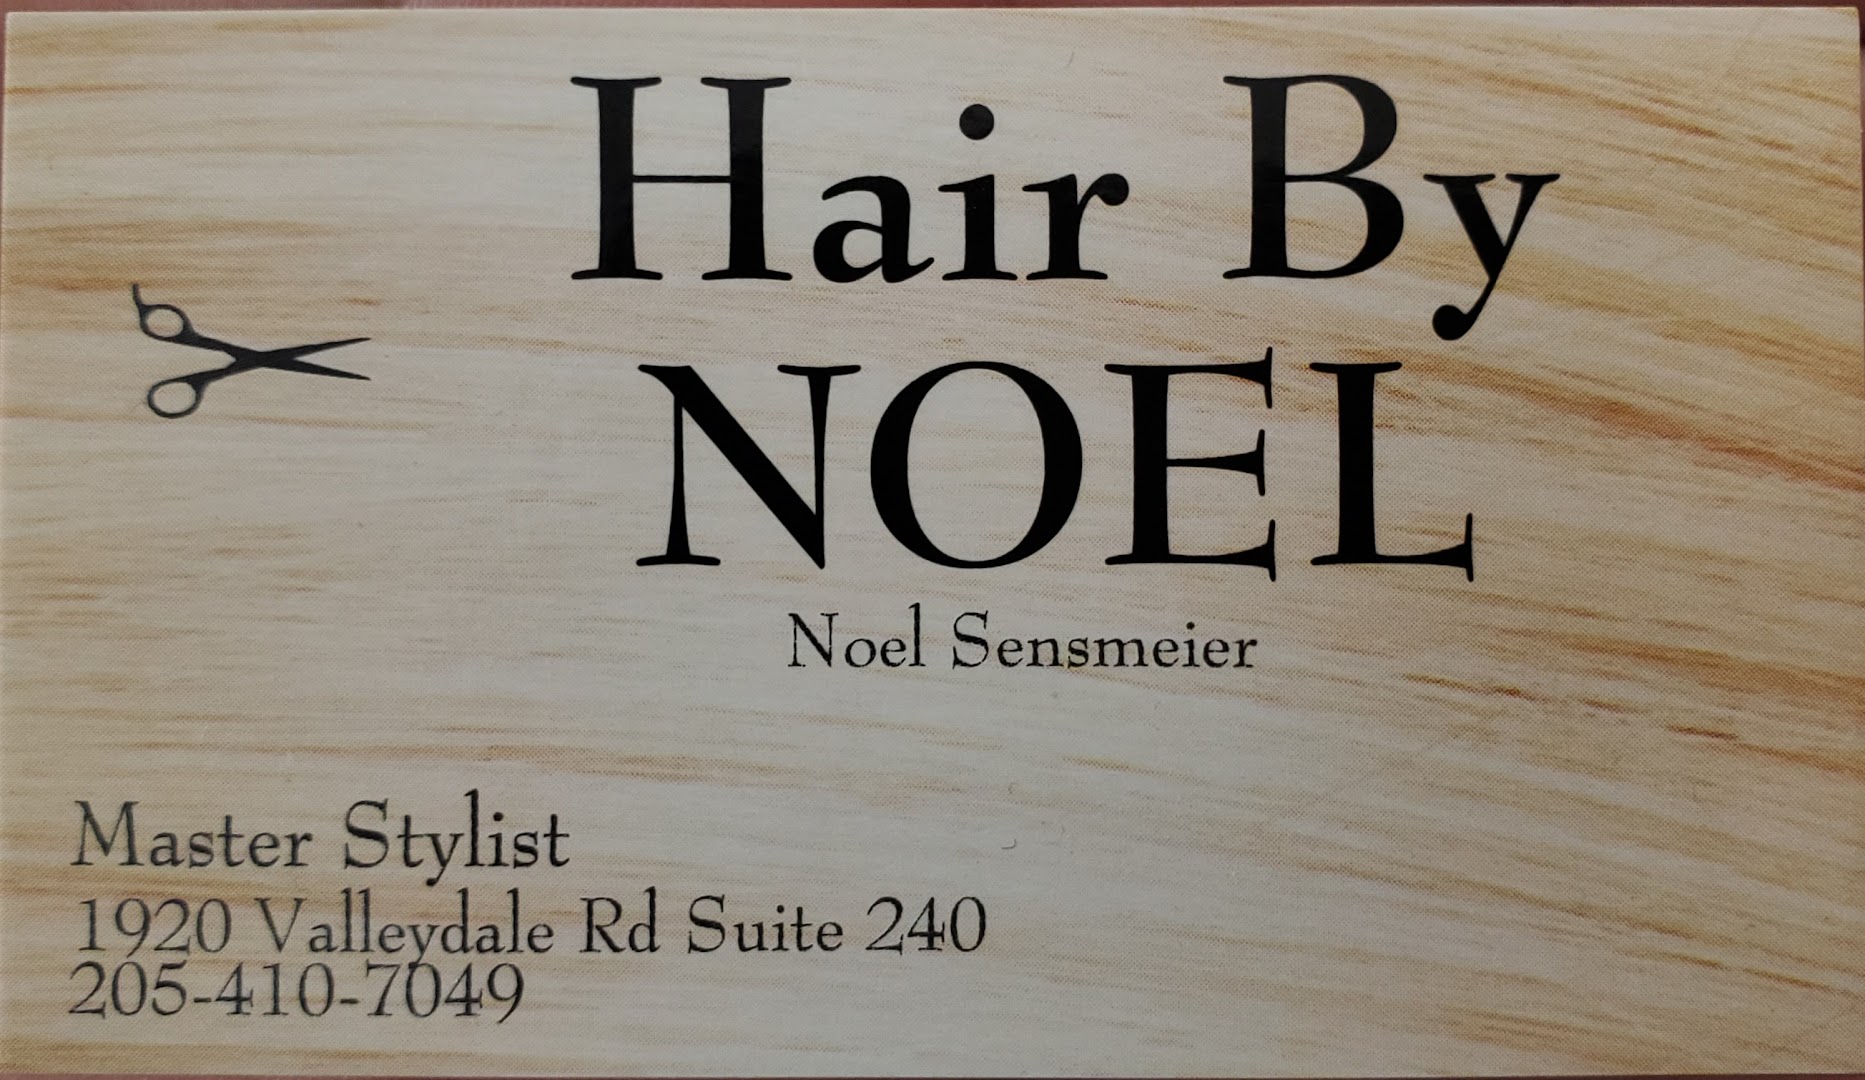 Hair by Noel